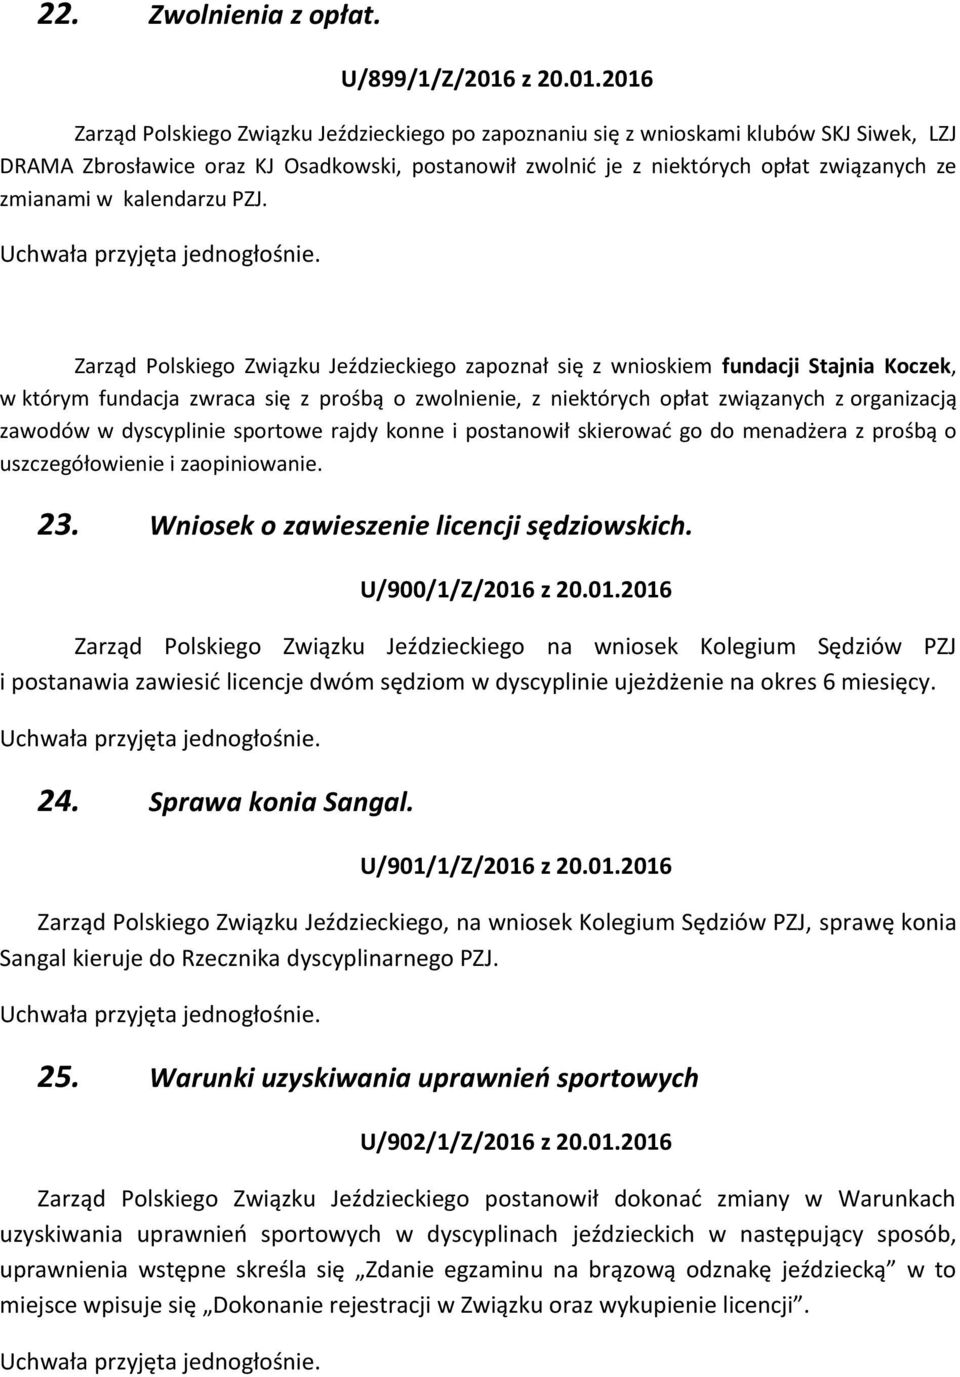 2016 Zarząd Polskiego Związku Jeździeckiego po zapoznaniu się z wnioskami klubów SKJ Siwek, LZJ DRAMA Zbrosławice oraz KJ Osadkowski, postanowił zwolnić je z niektórych opłat związanych ze zmianami w